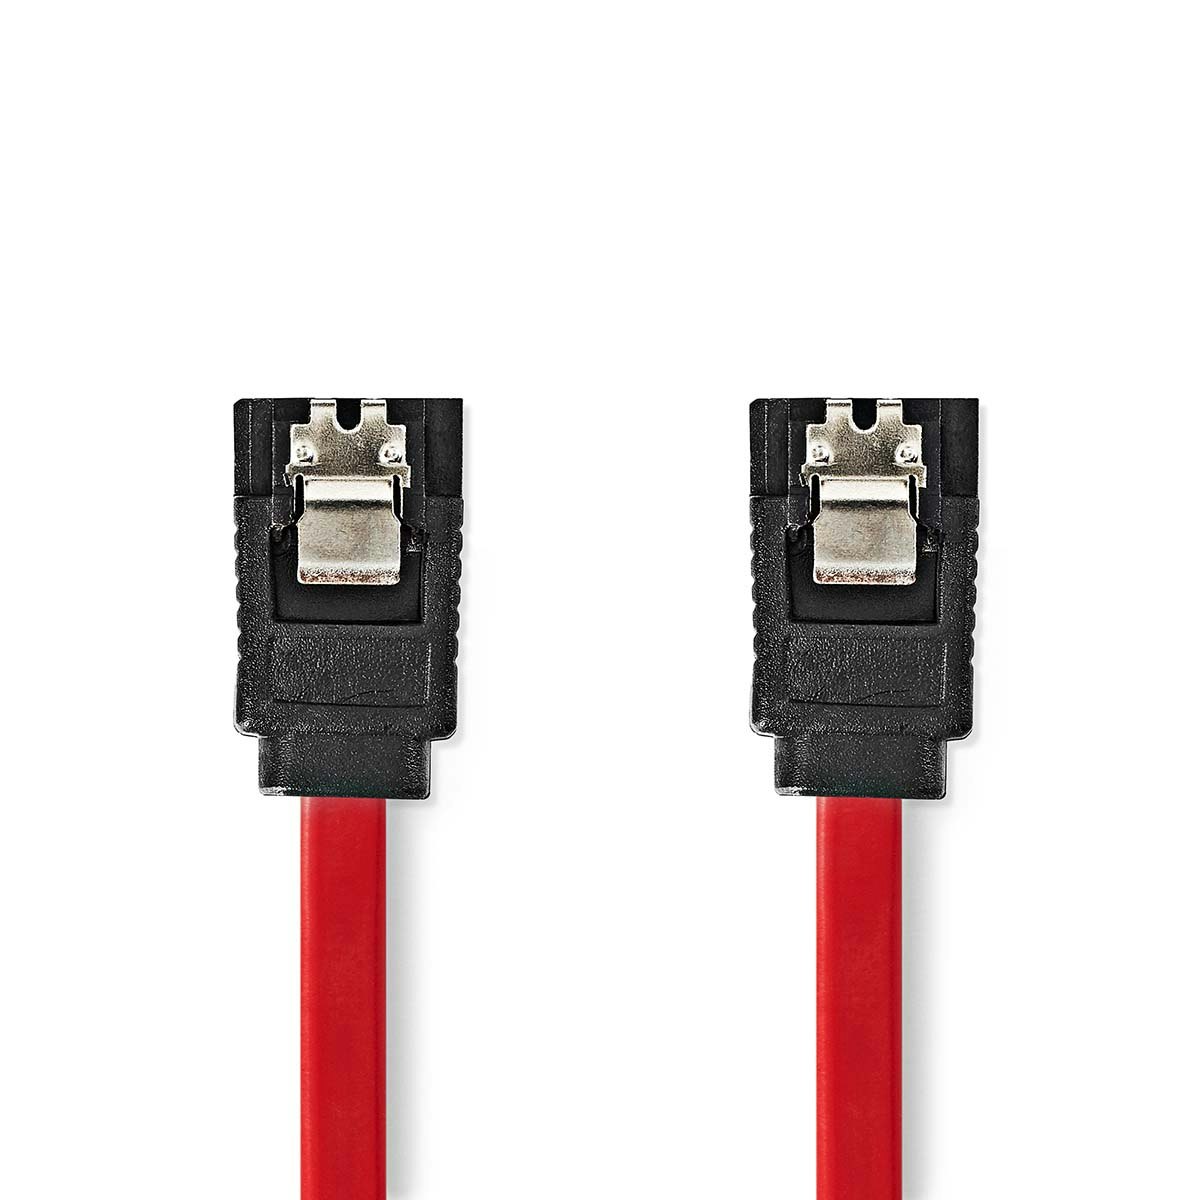 SATA kabel 3 Gbps | SATA 7-Pin Hun | SATA 7-Pin Hun 50cm